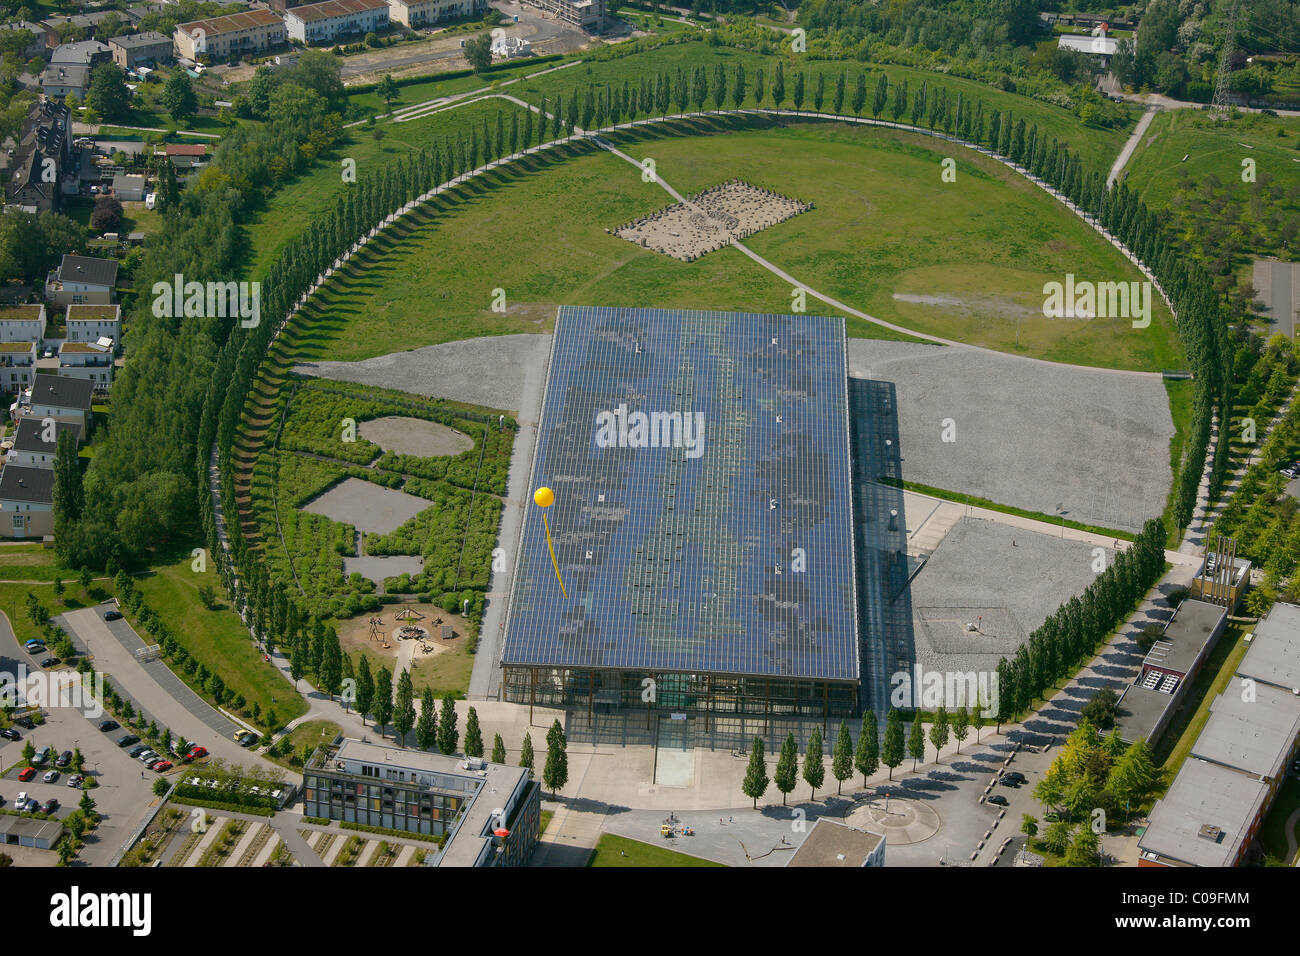 Vista aerea, ex miniera Mont Cenis 1, 3, 5 con la Solarakademie Mt.Cenis accademia solare, Sodingen distretto, Herne, Foto Stock